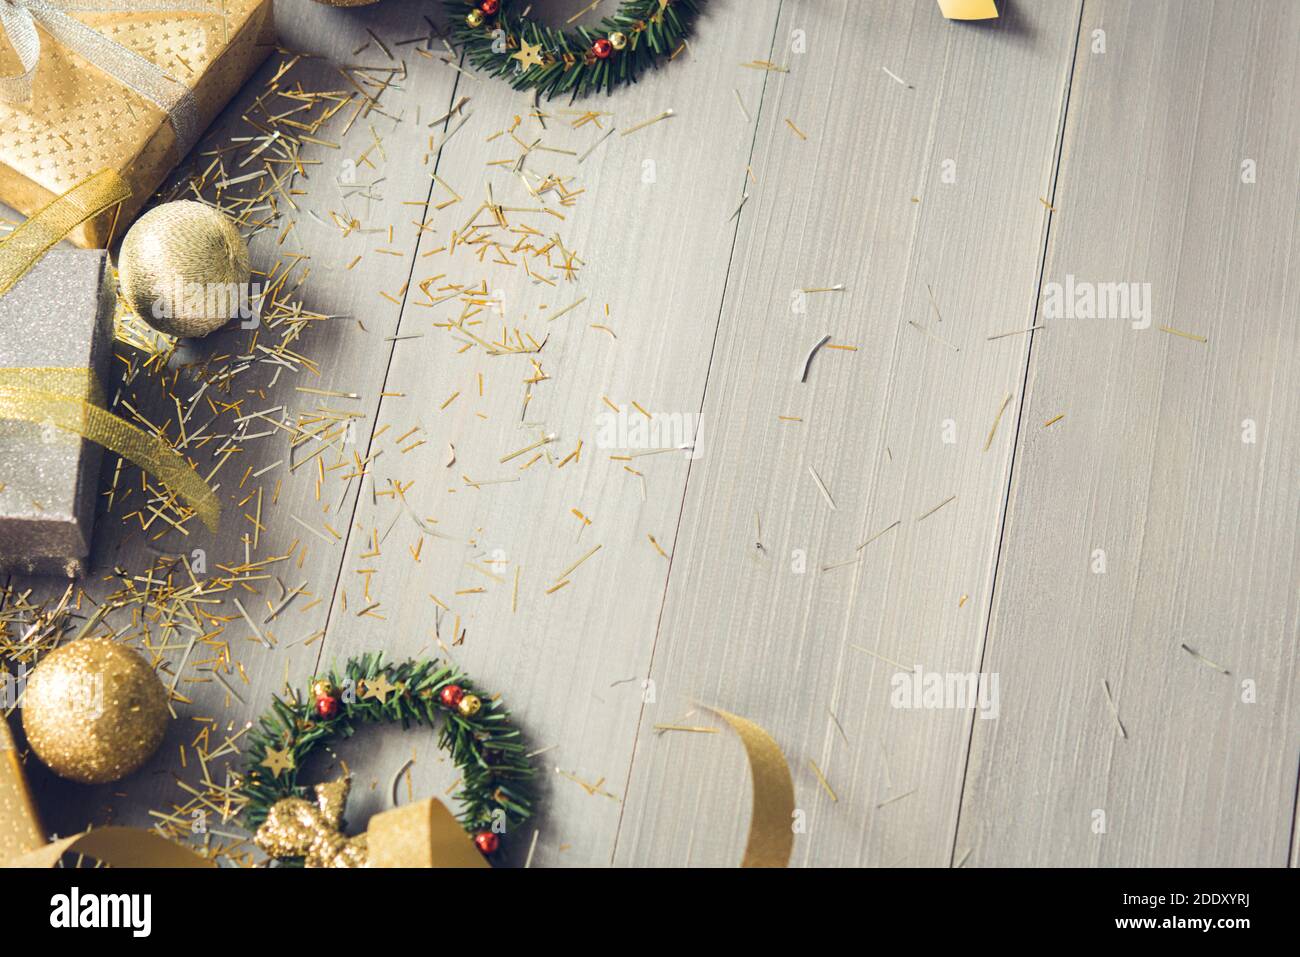 Boîtes-cadeaux argentées et dorées et articles de décoration de Noël étincelants sur fond de bois, vue de dessus avec espace de copie Banque D'Images